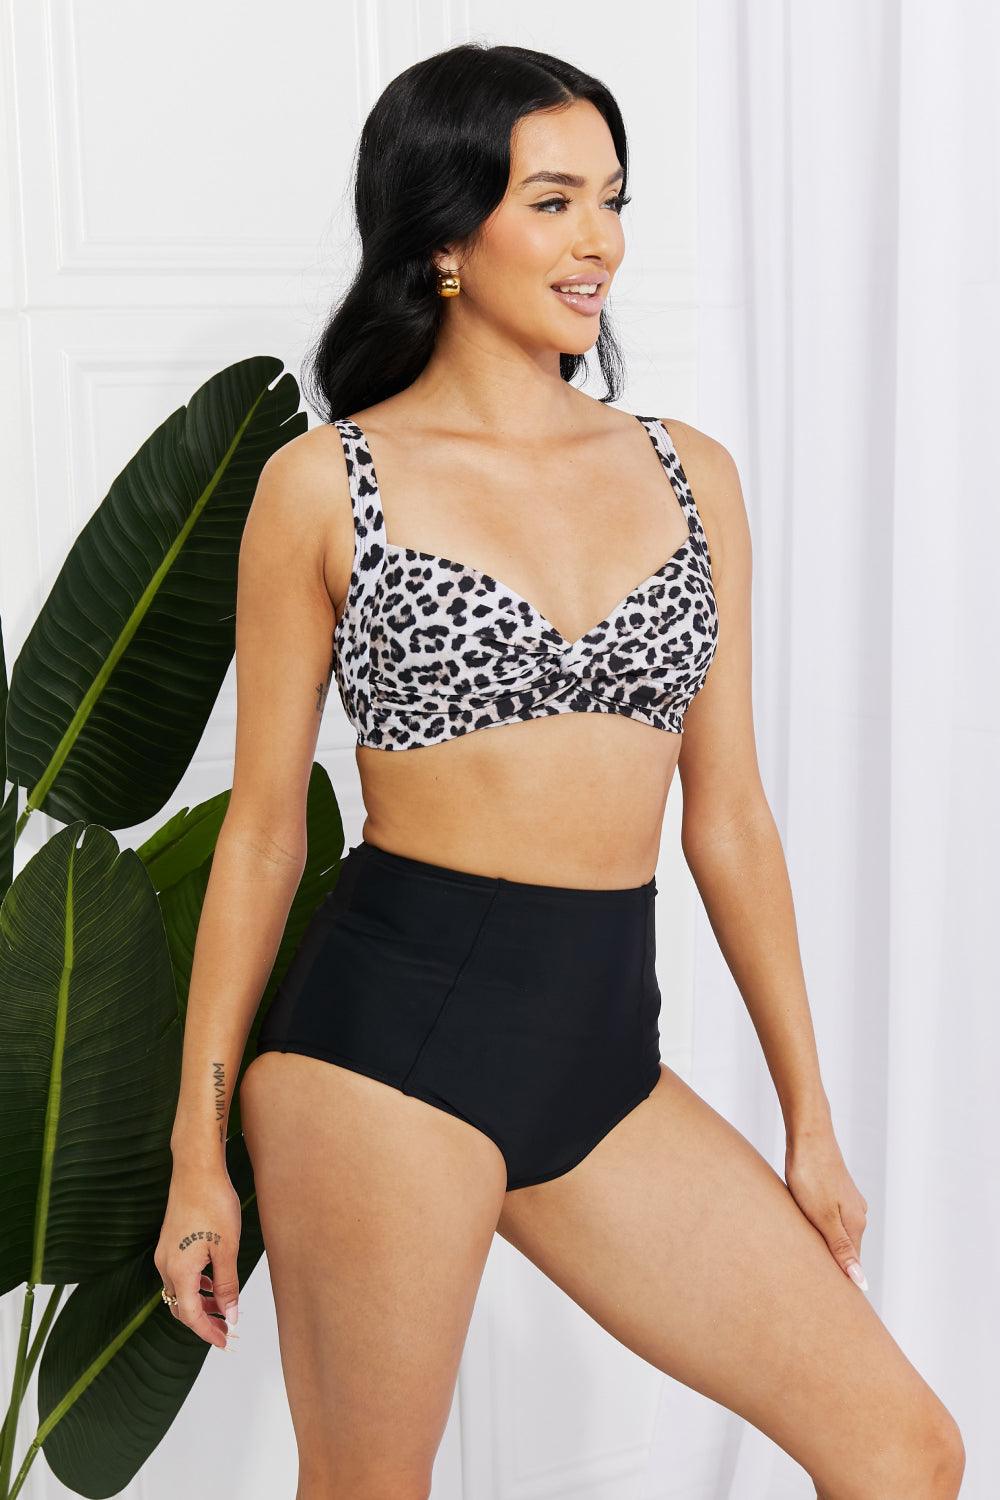 Marina West Swim Take A Dip Twist High-Rise Bikini in Leopard - Glamorous Boutique USA L.L.C.